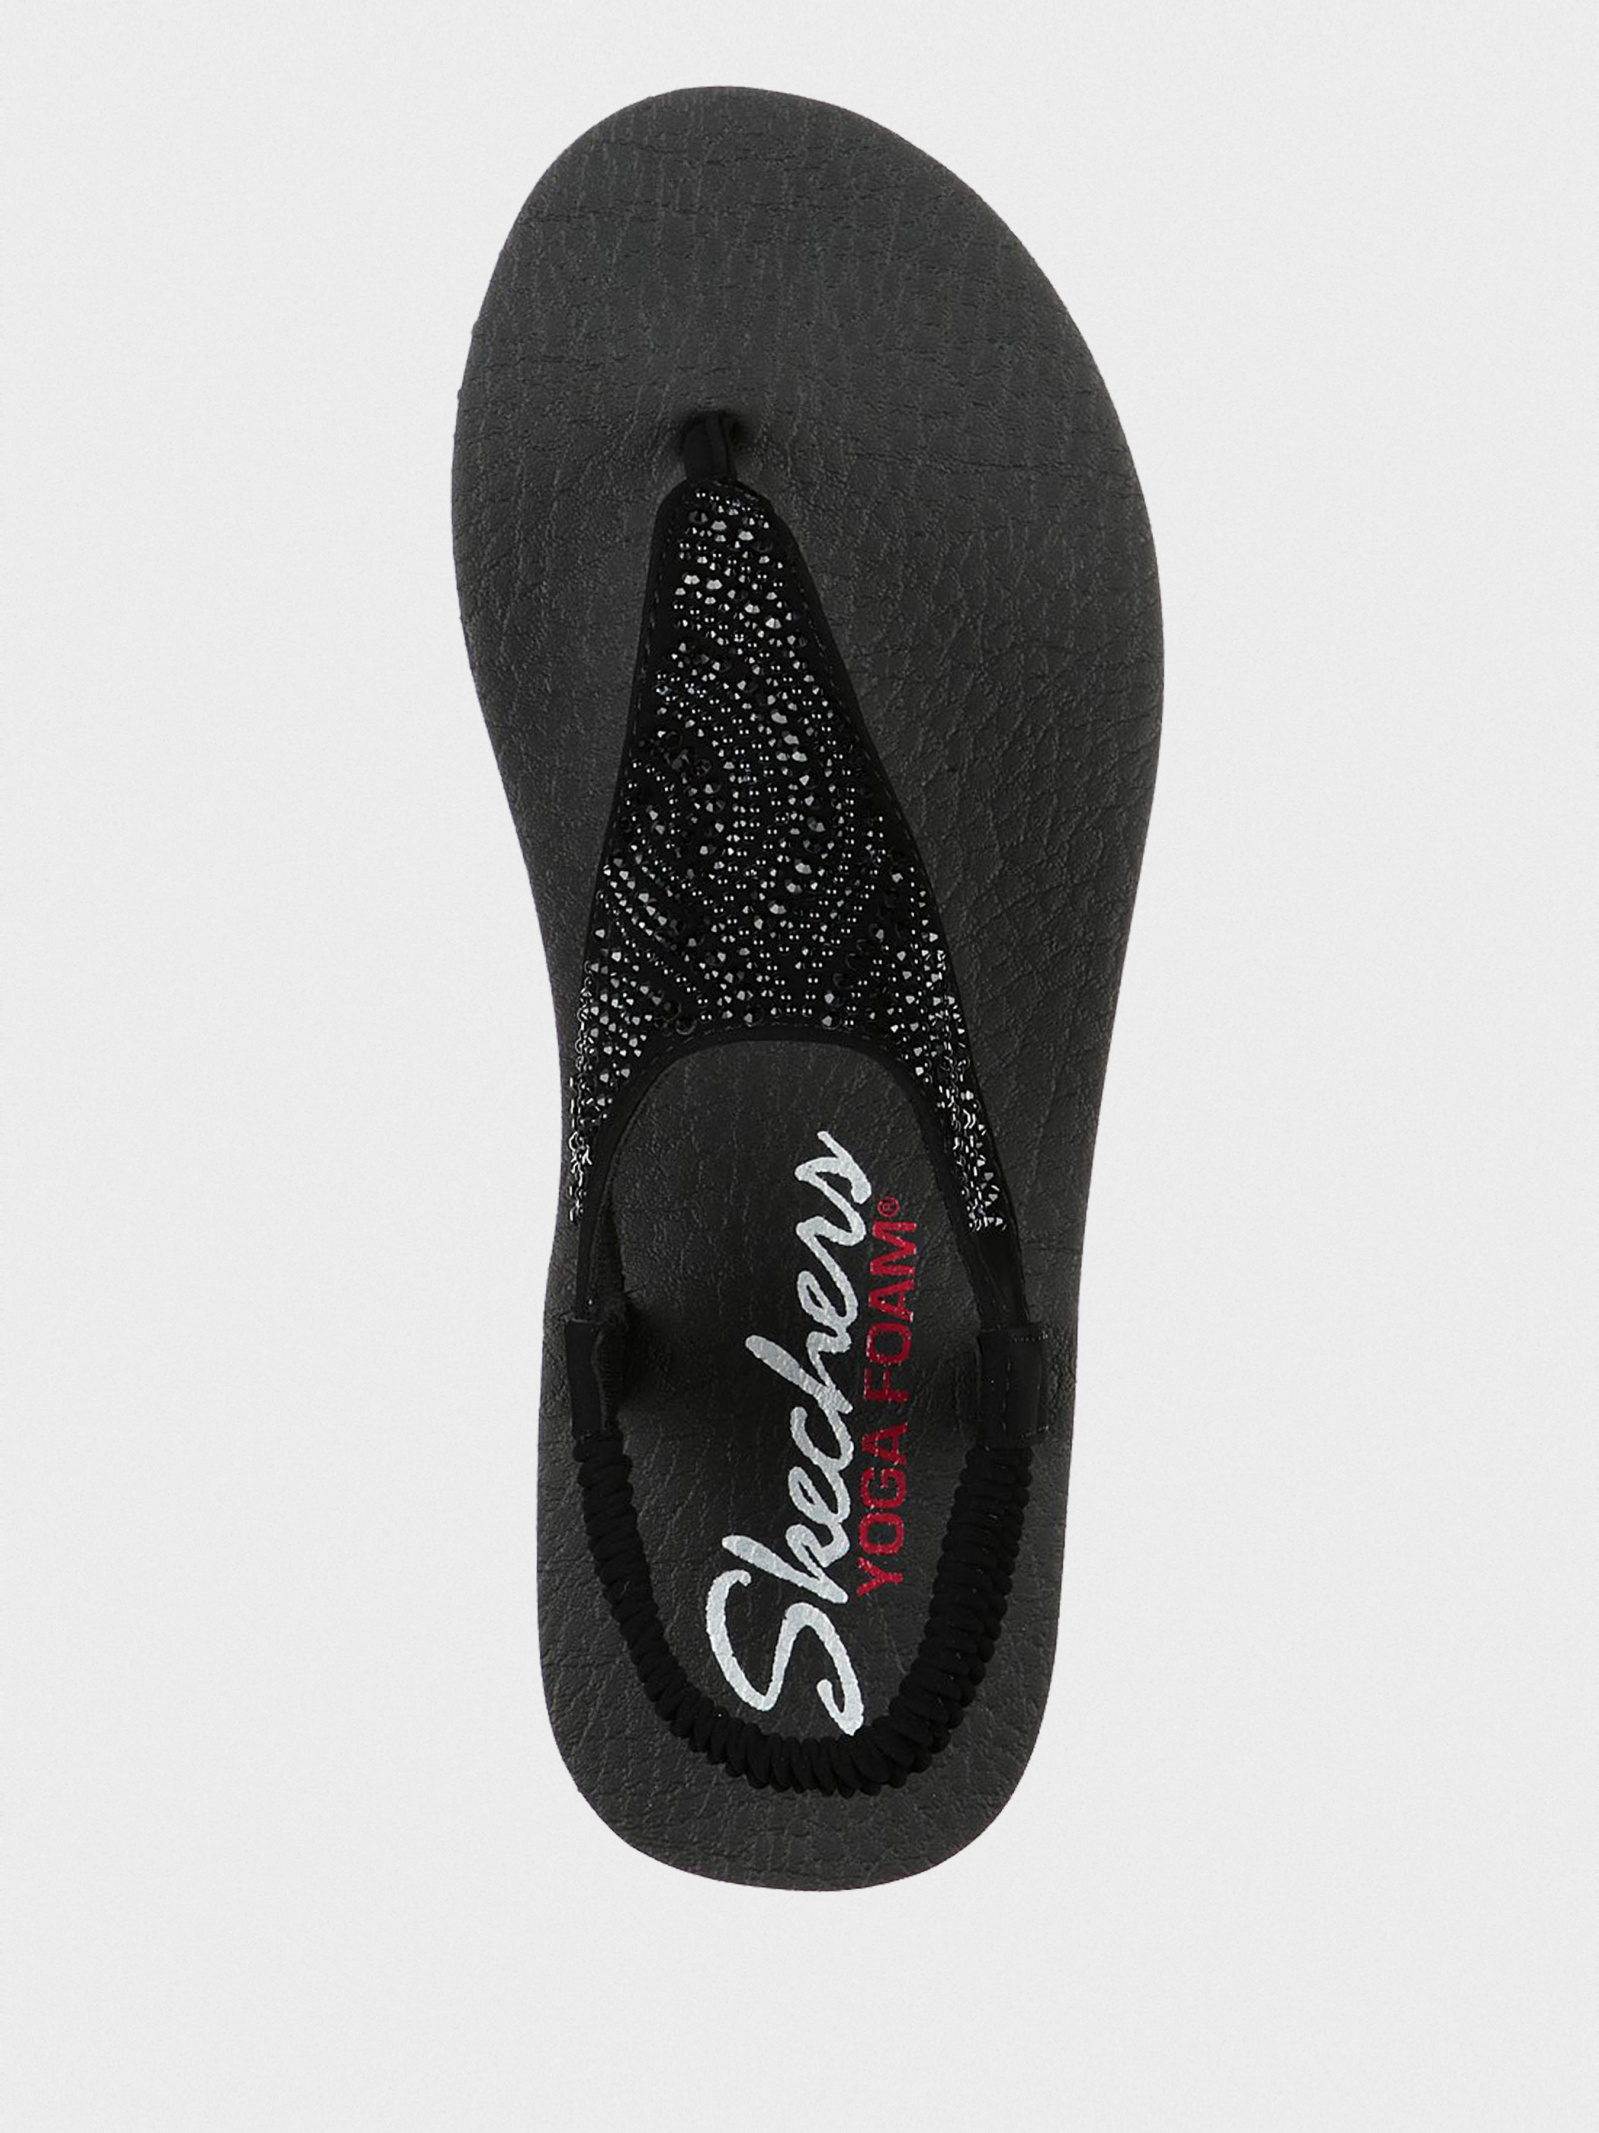 Skechers Women's Yoga Foam Sandal Mediation New Moon 32919